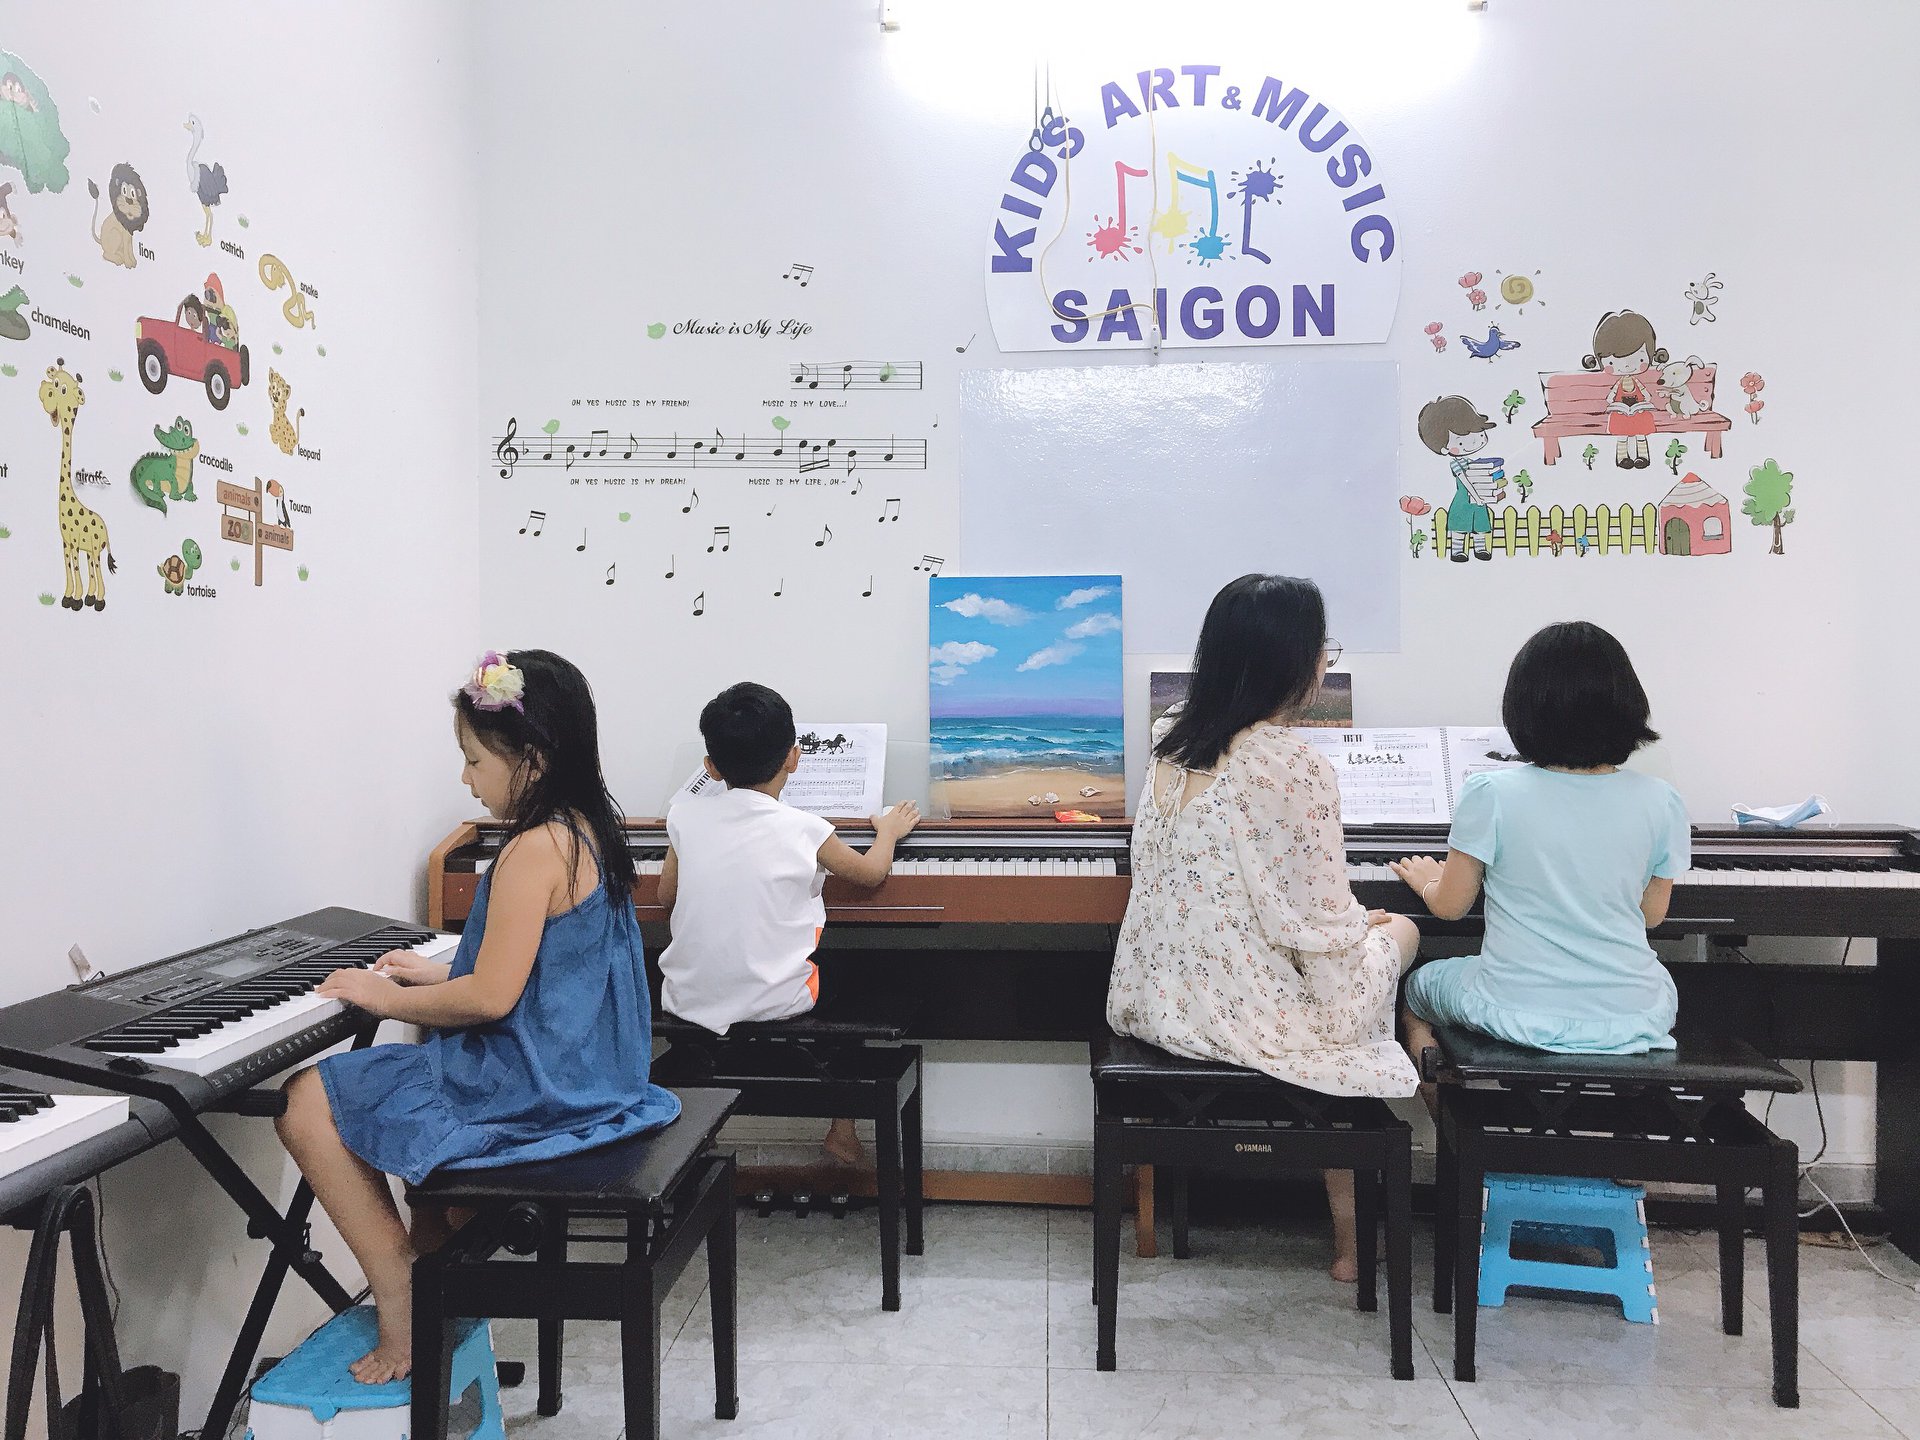 Tìm hiểu lớp học piano cho bé tại Kids Art & Music Sài Gòn - hình ảnh 4